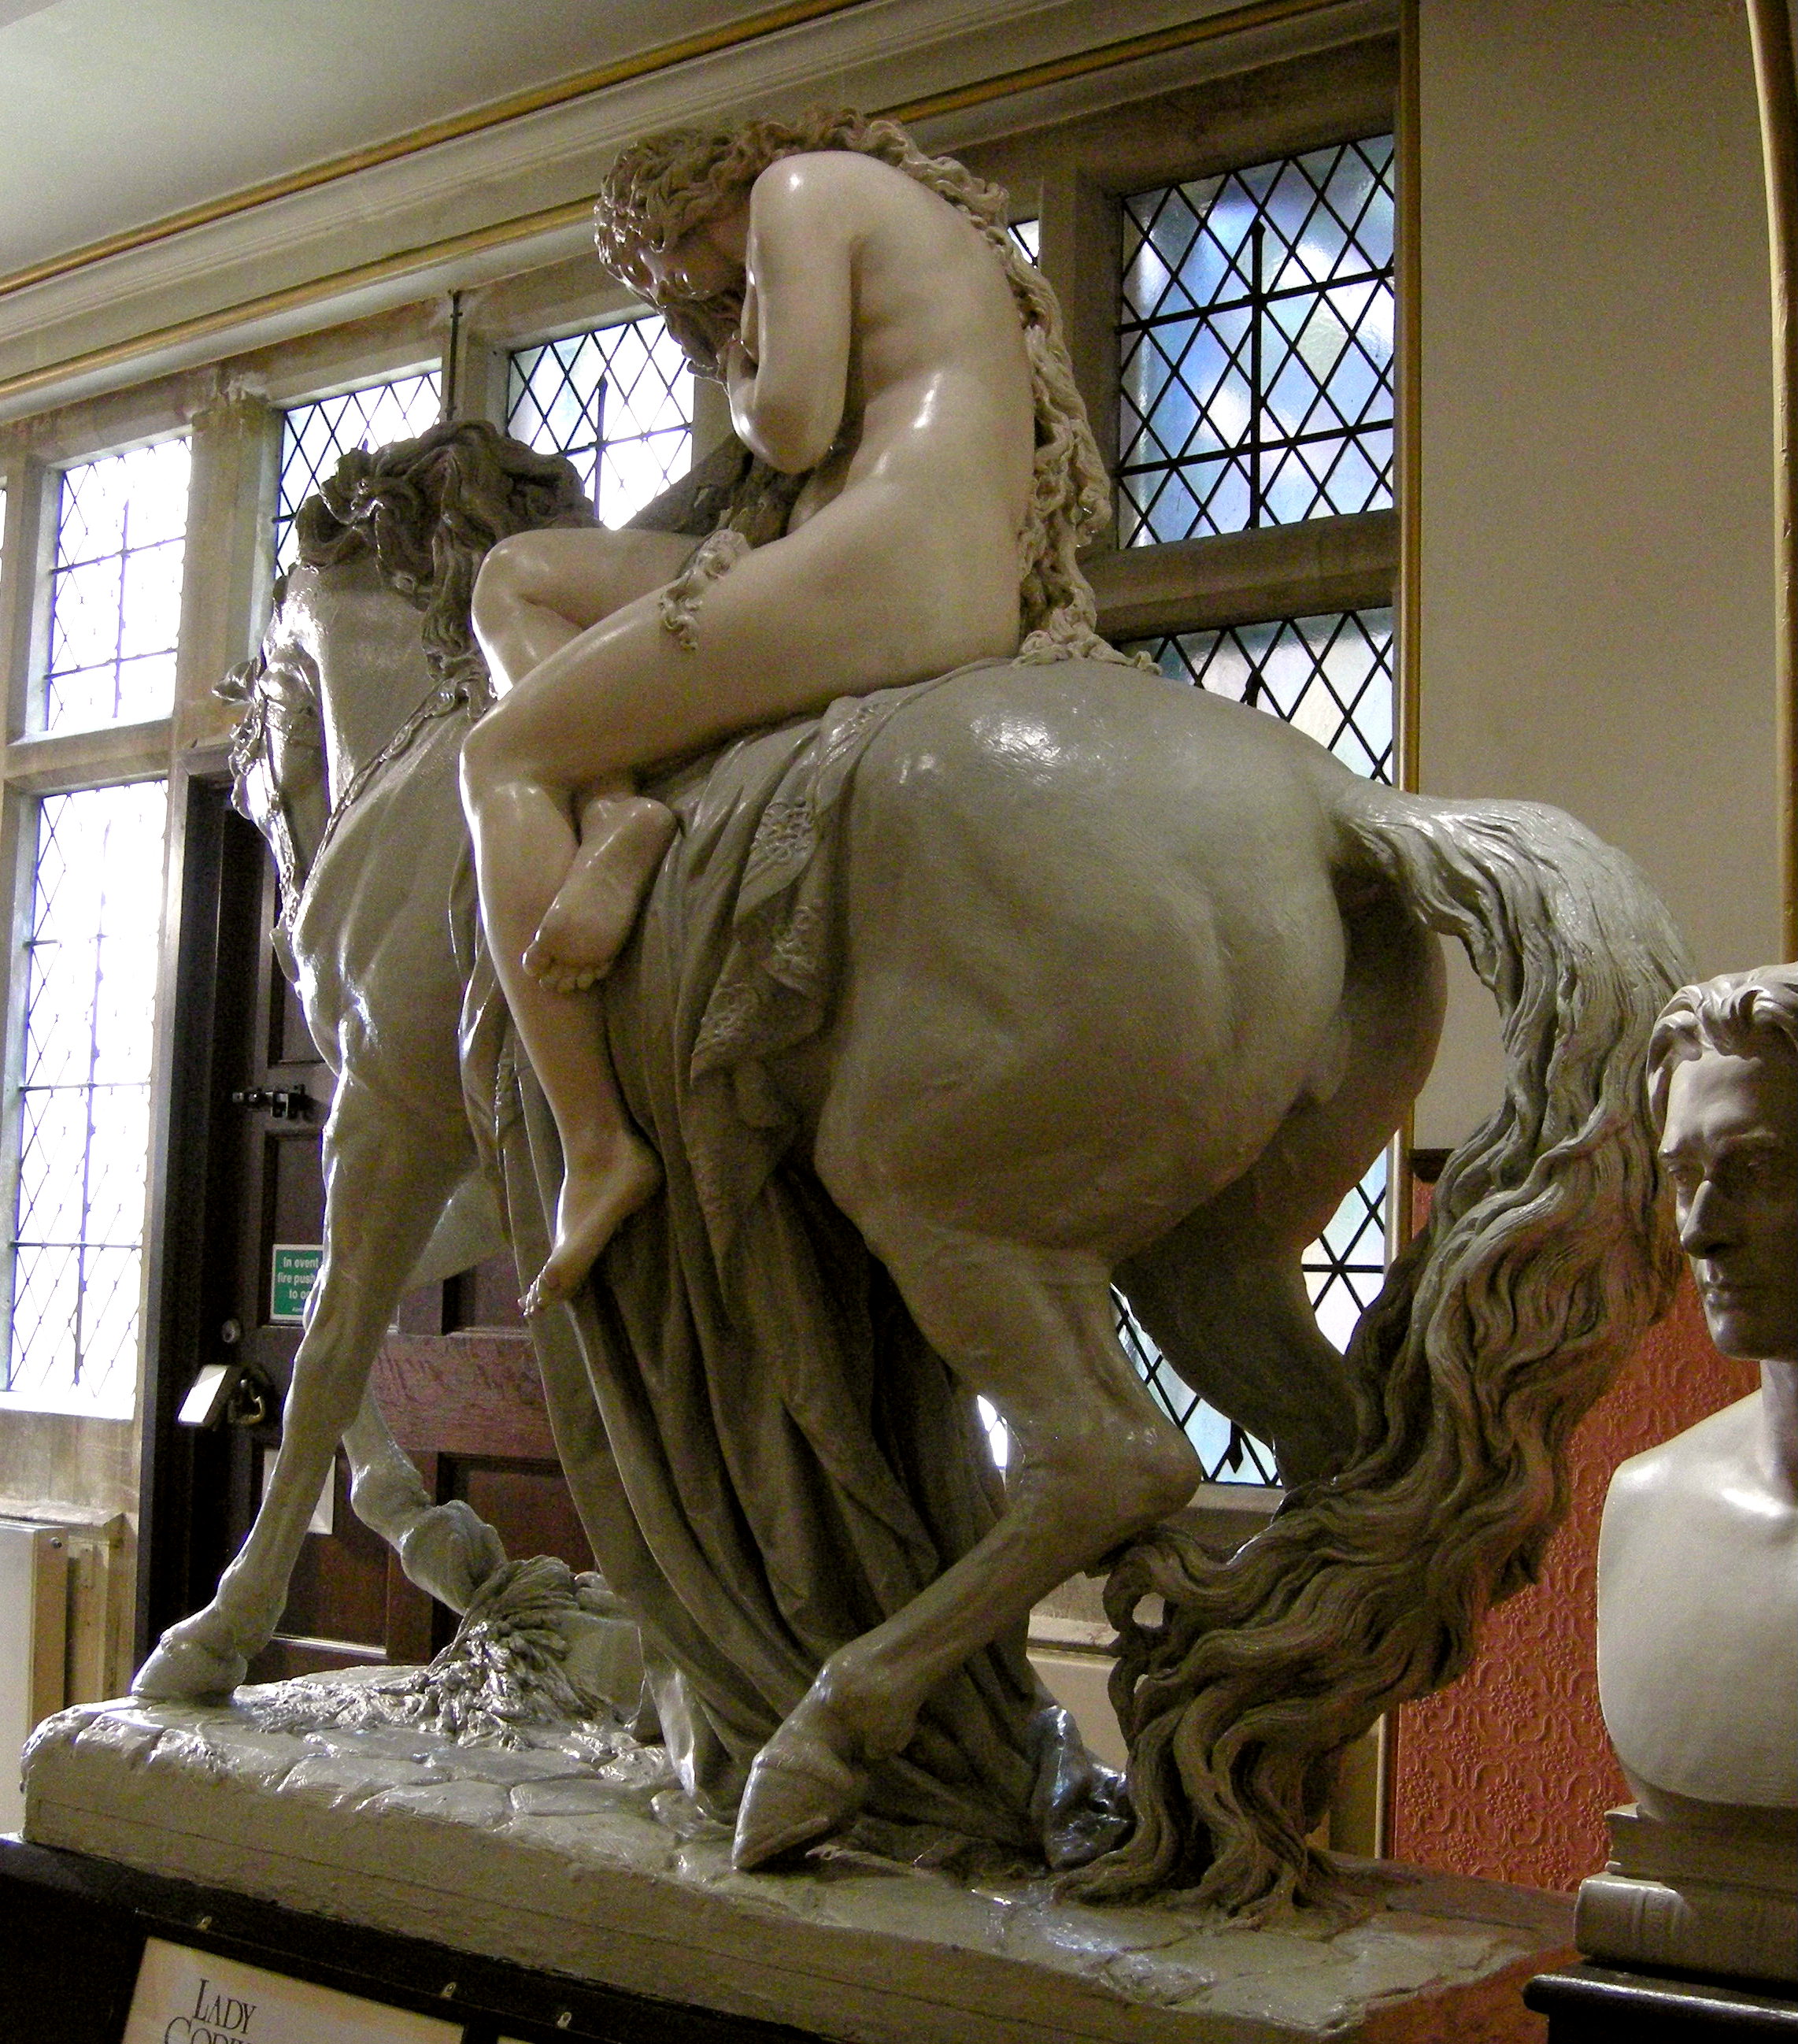 Lady Godiva meztelen lovaglását megörökítő szbor a 19. századból (fotó: Wikipedia)